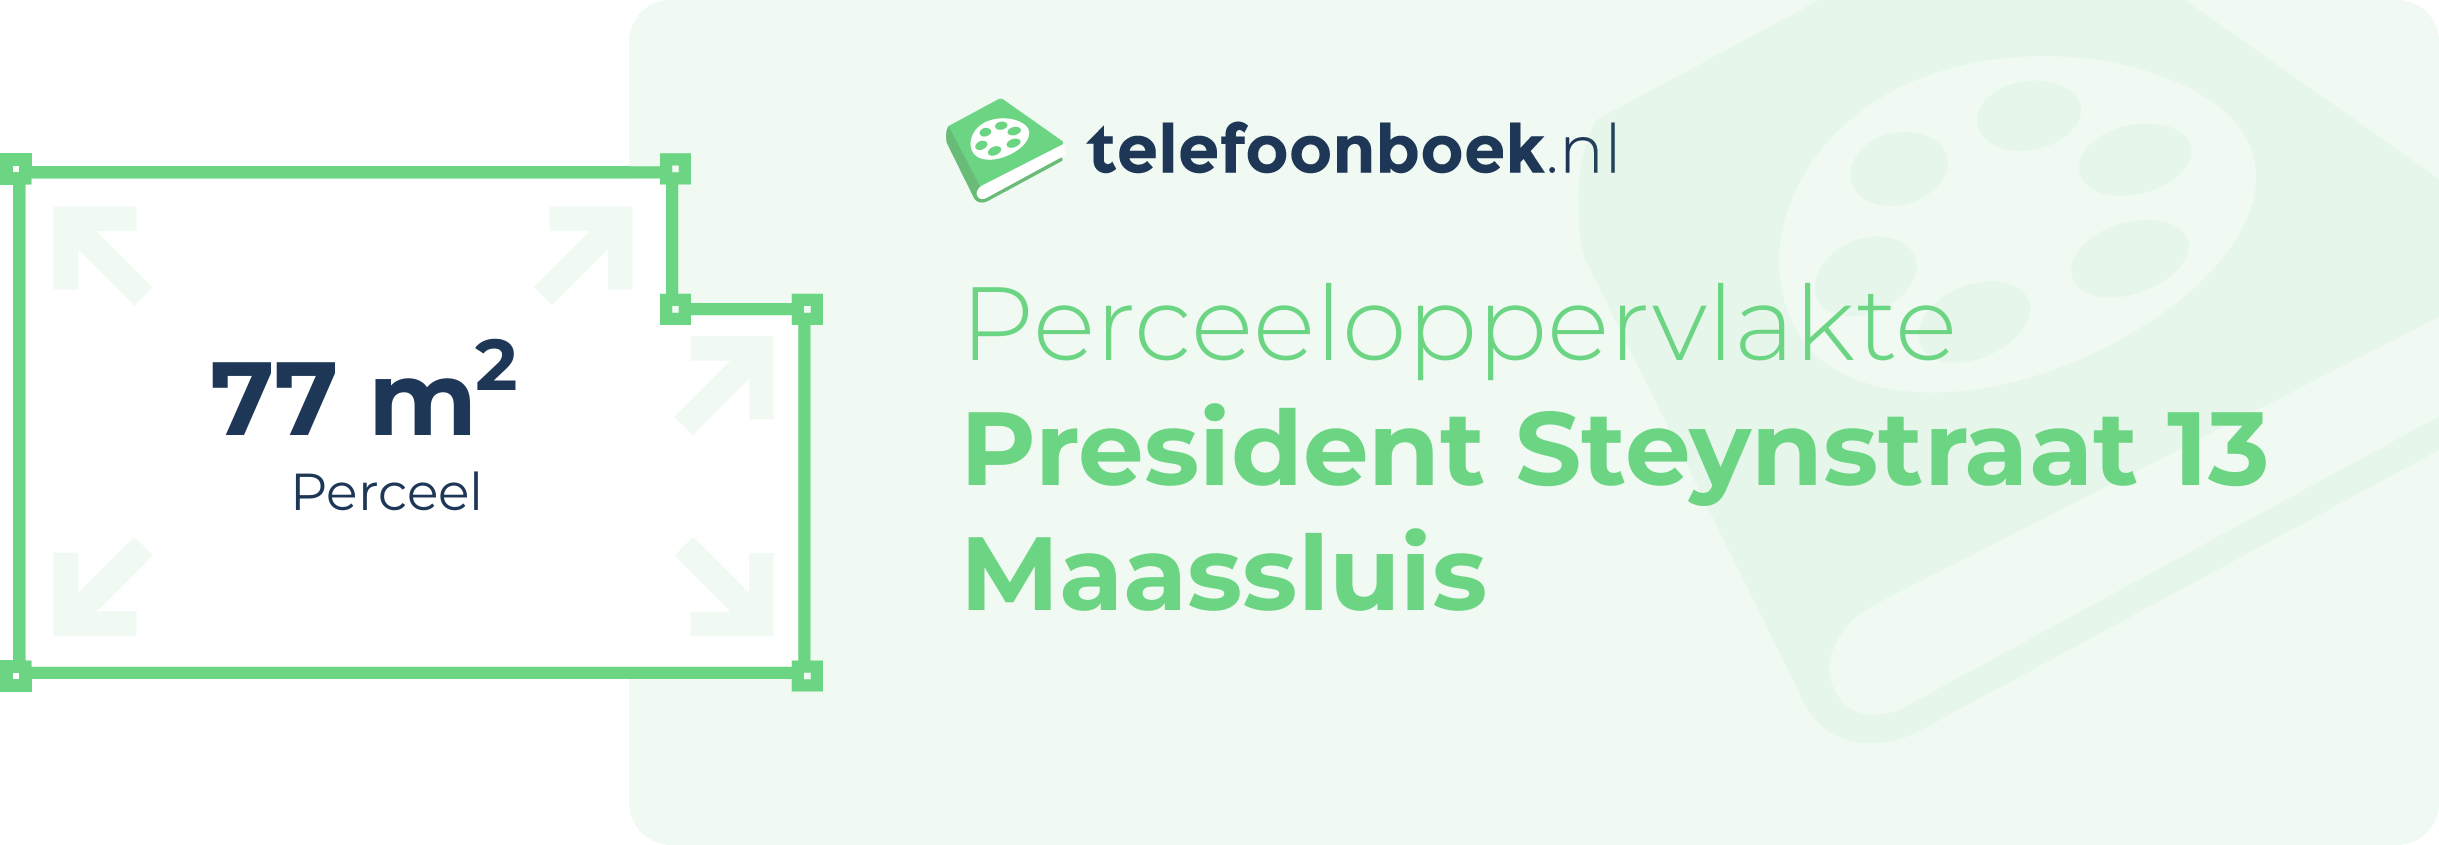 Perceeloppervlakte President Steynstraat 13 Maassluis